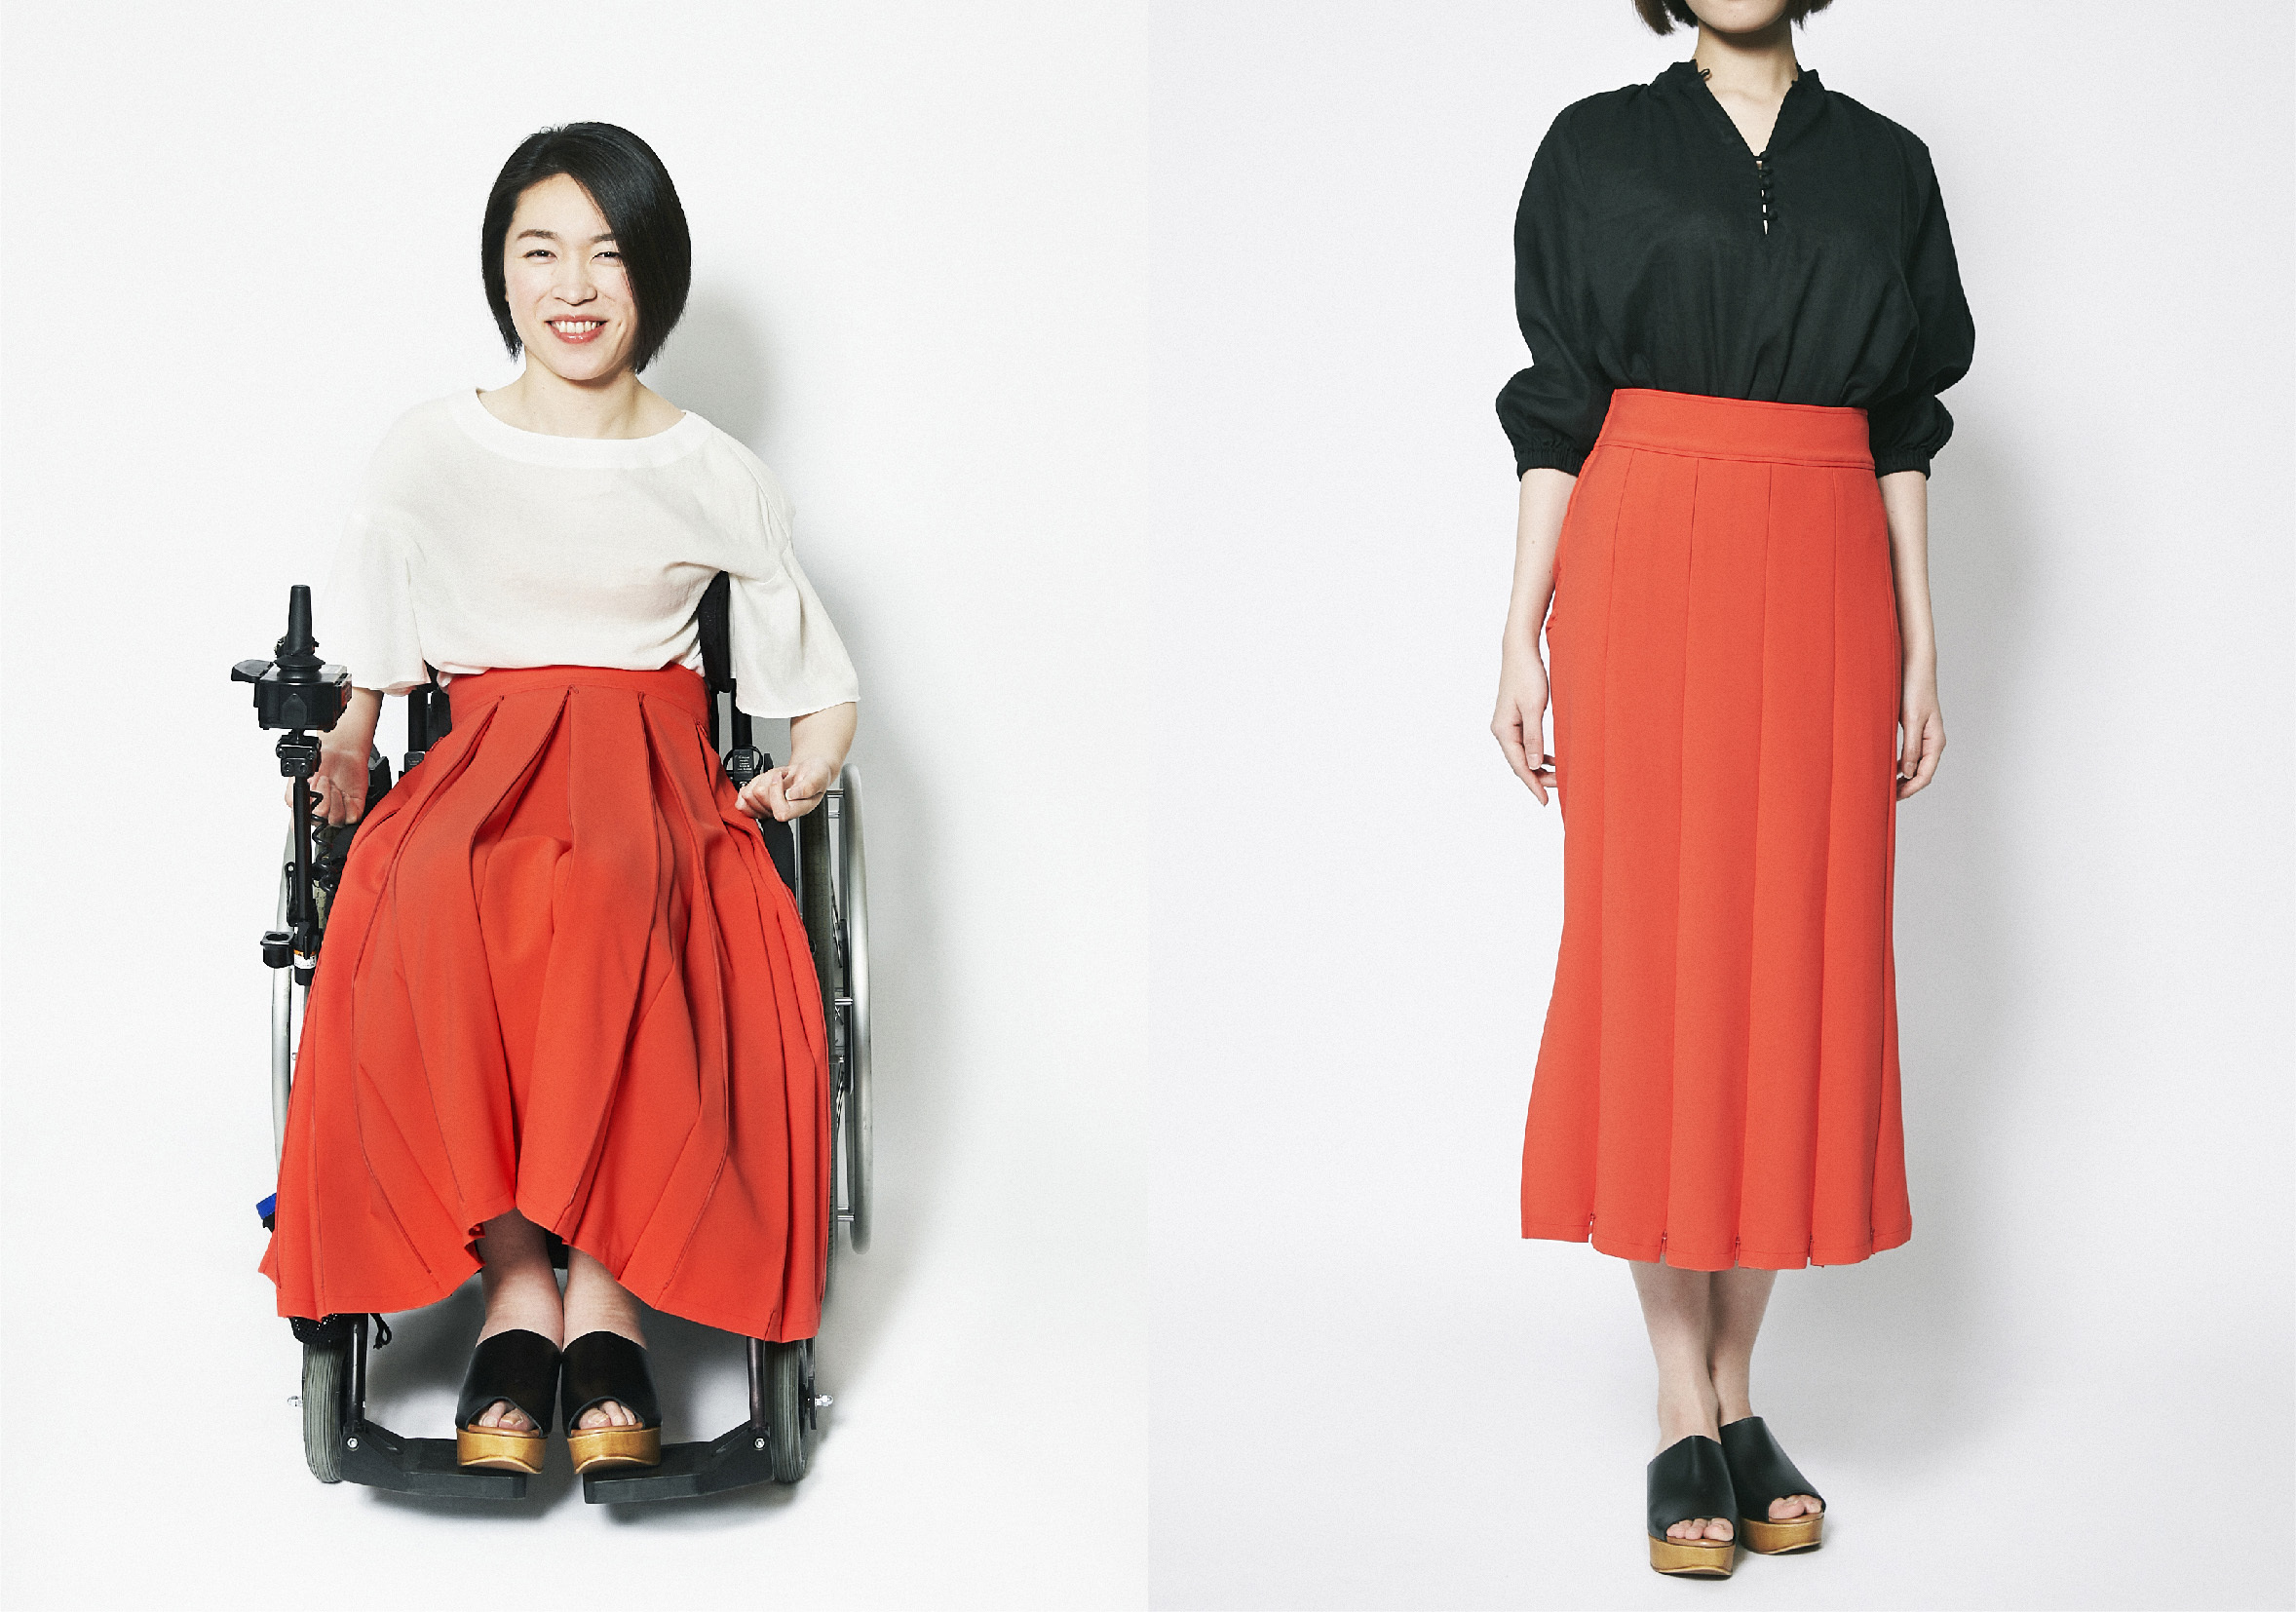 041のオレンジ色のスカートを履いた女性